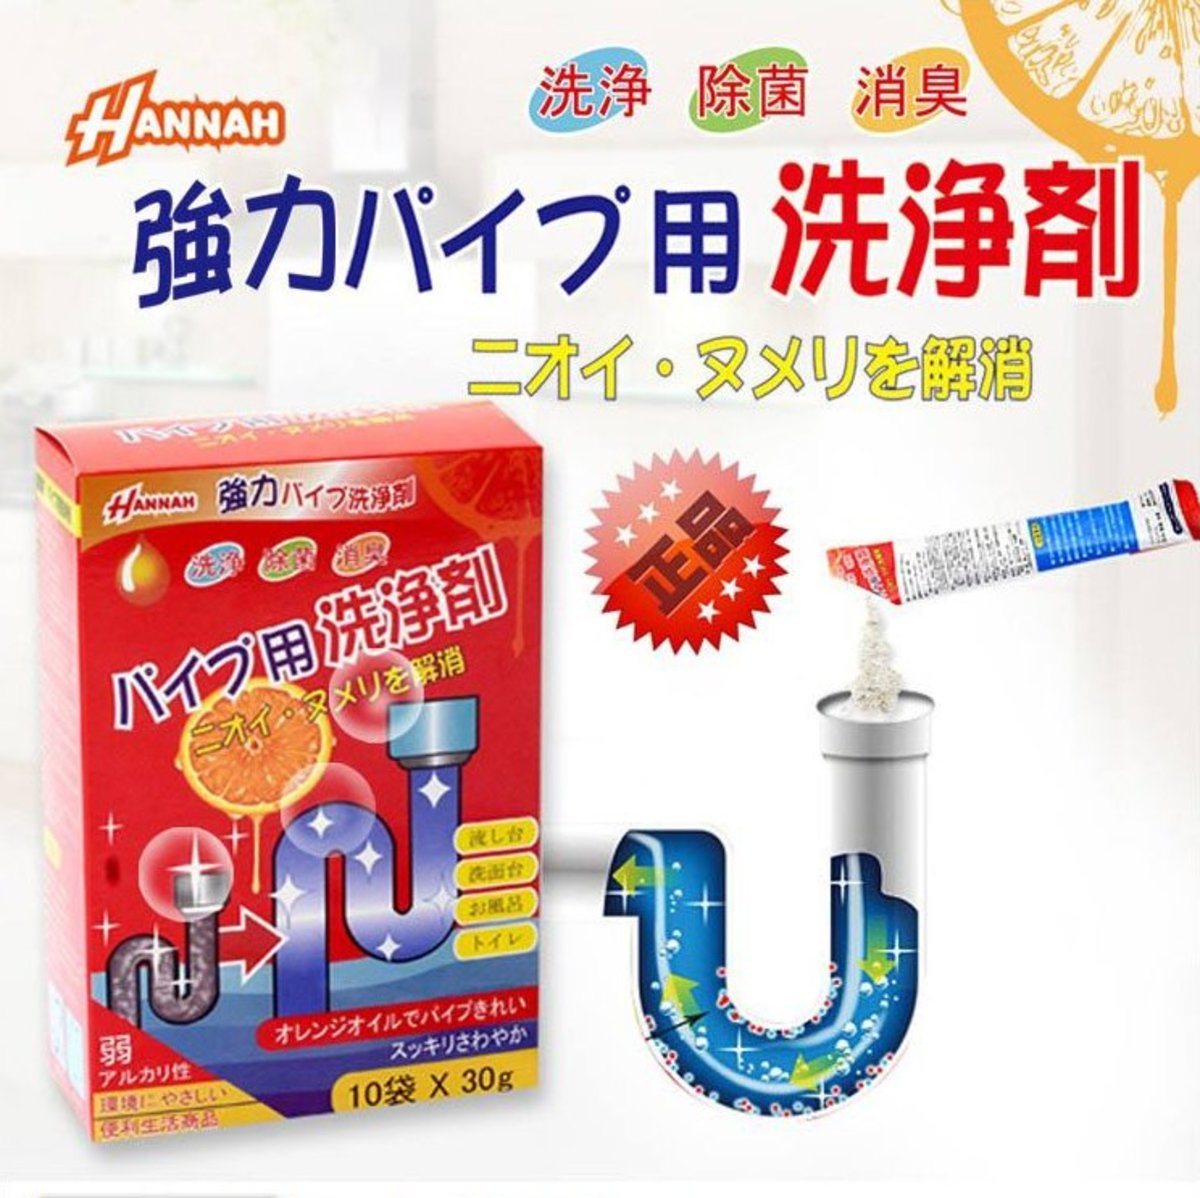 HANNAH-日本強效管道疏通劑